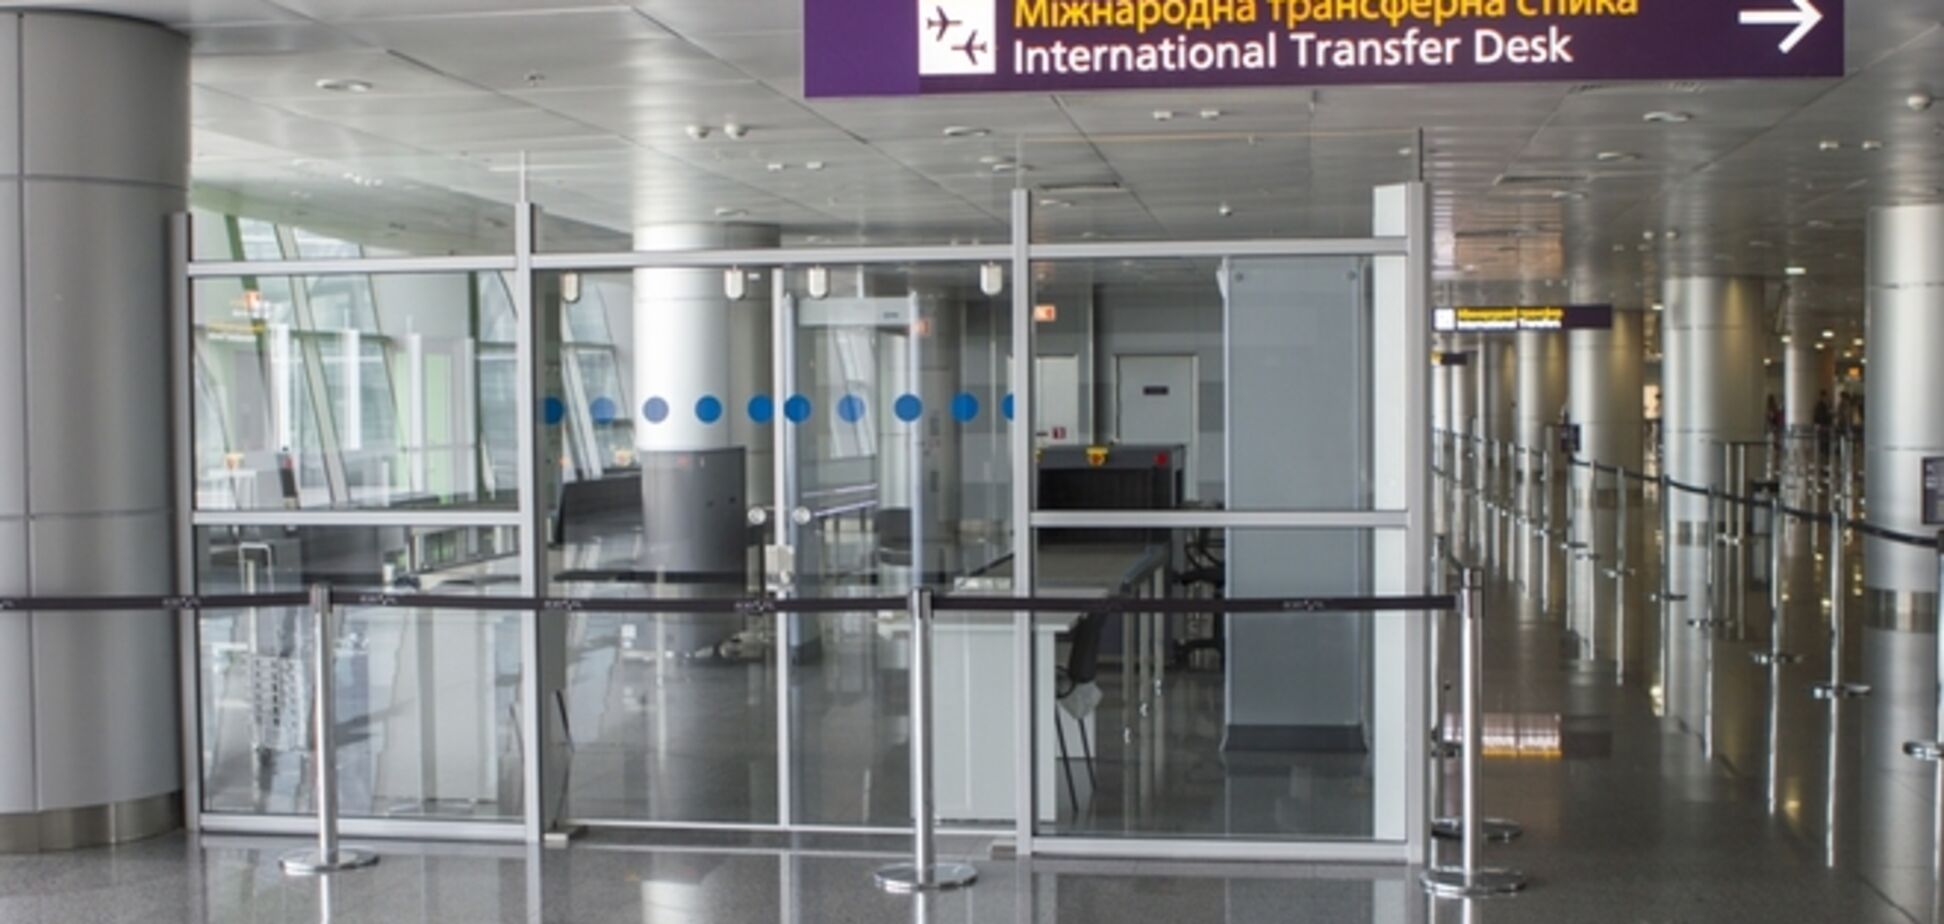 Аэропорт Борисполь увеличил зону пересадки пассажиров